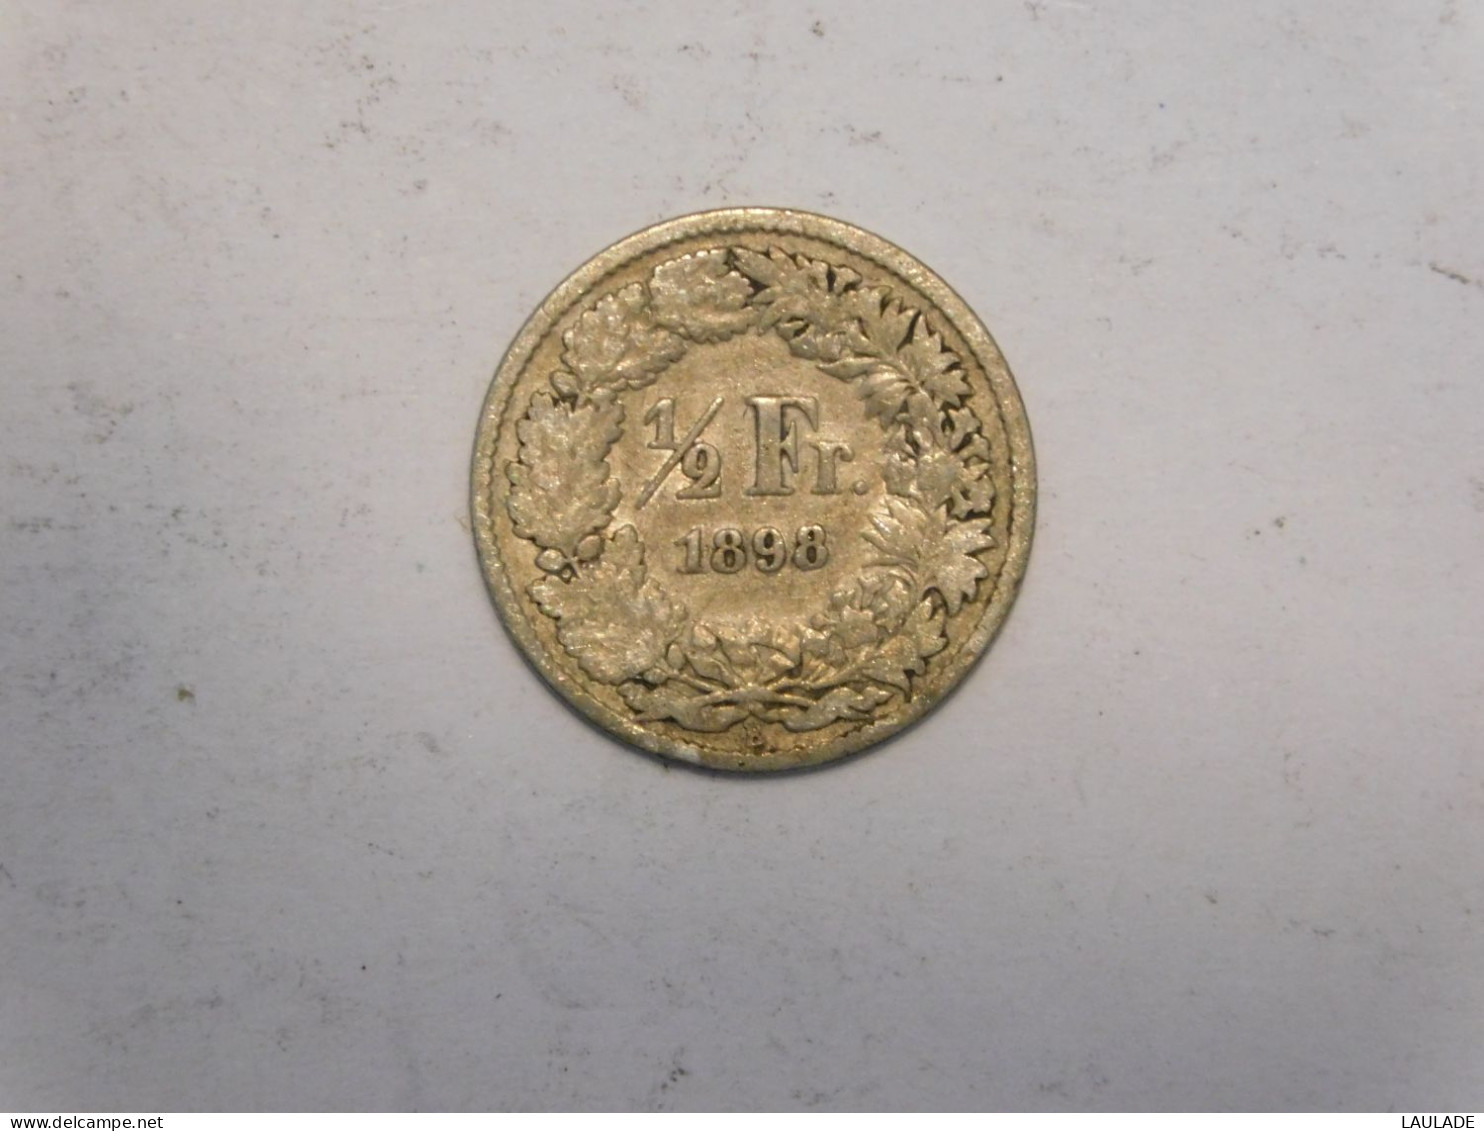 SUISSE 1/2 Franc 1898 Silver, Argent Demi - 1/2 Franc